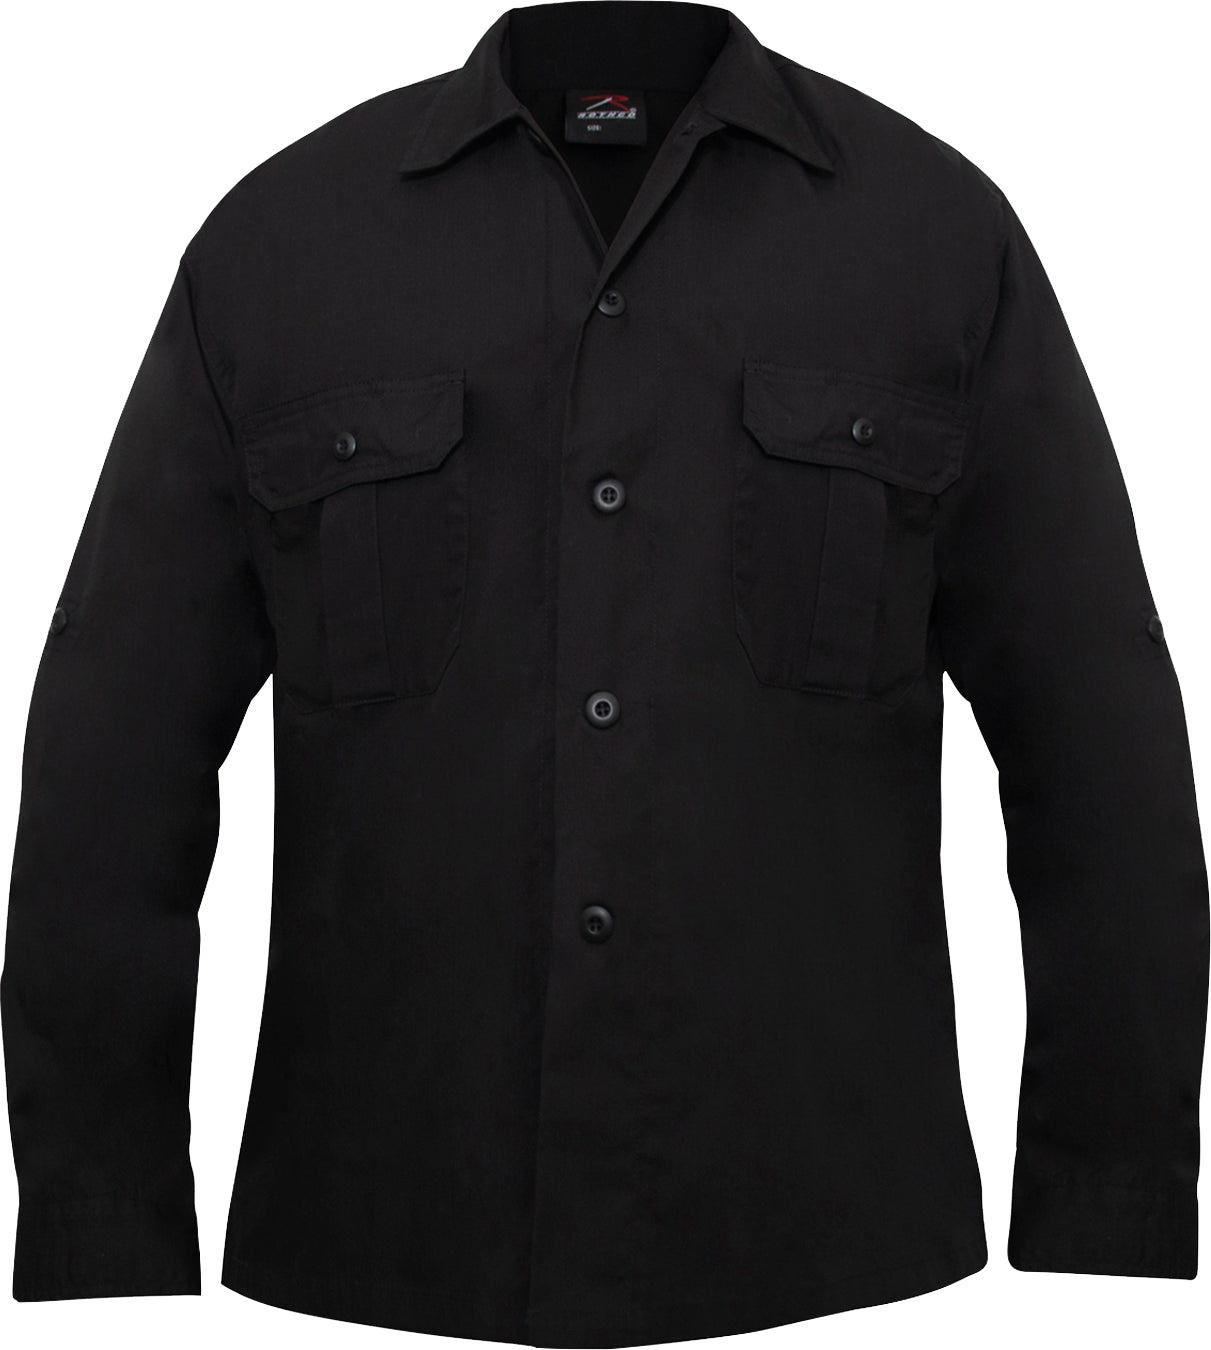 Black- Lightweight Tactical Shirt